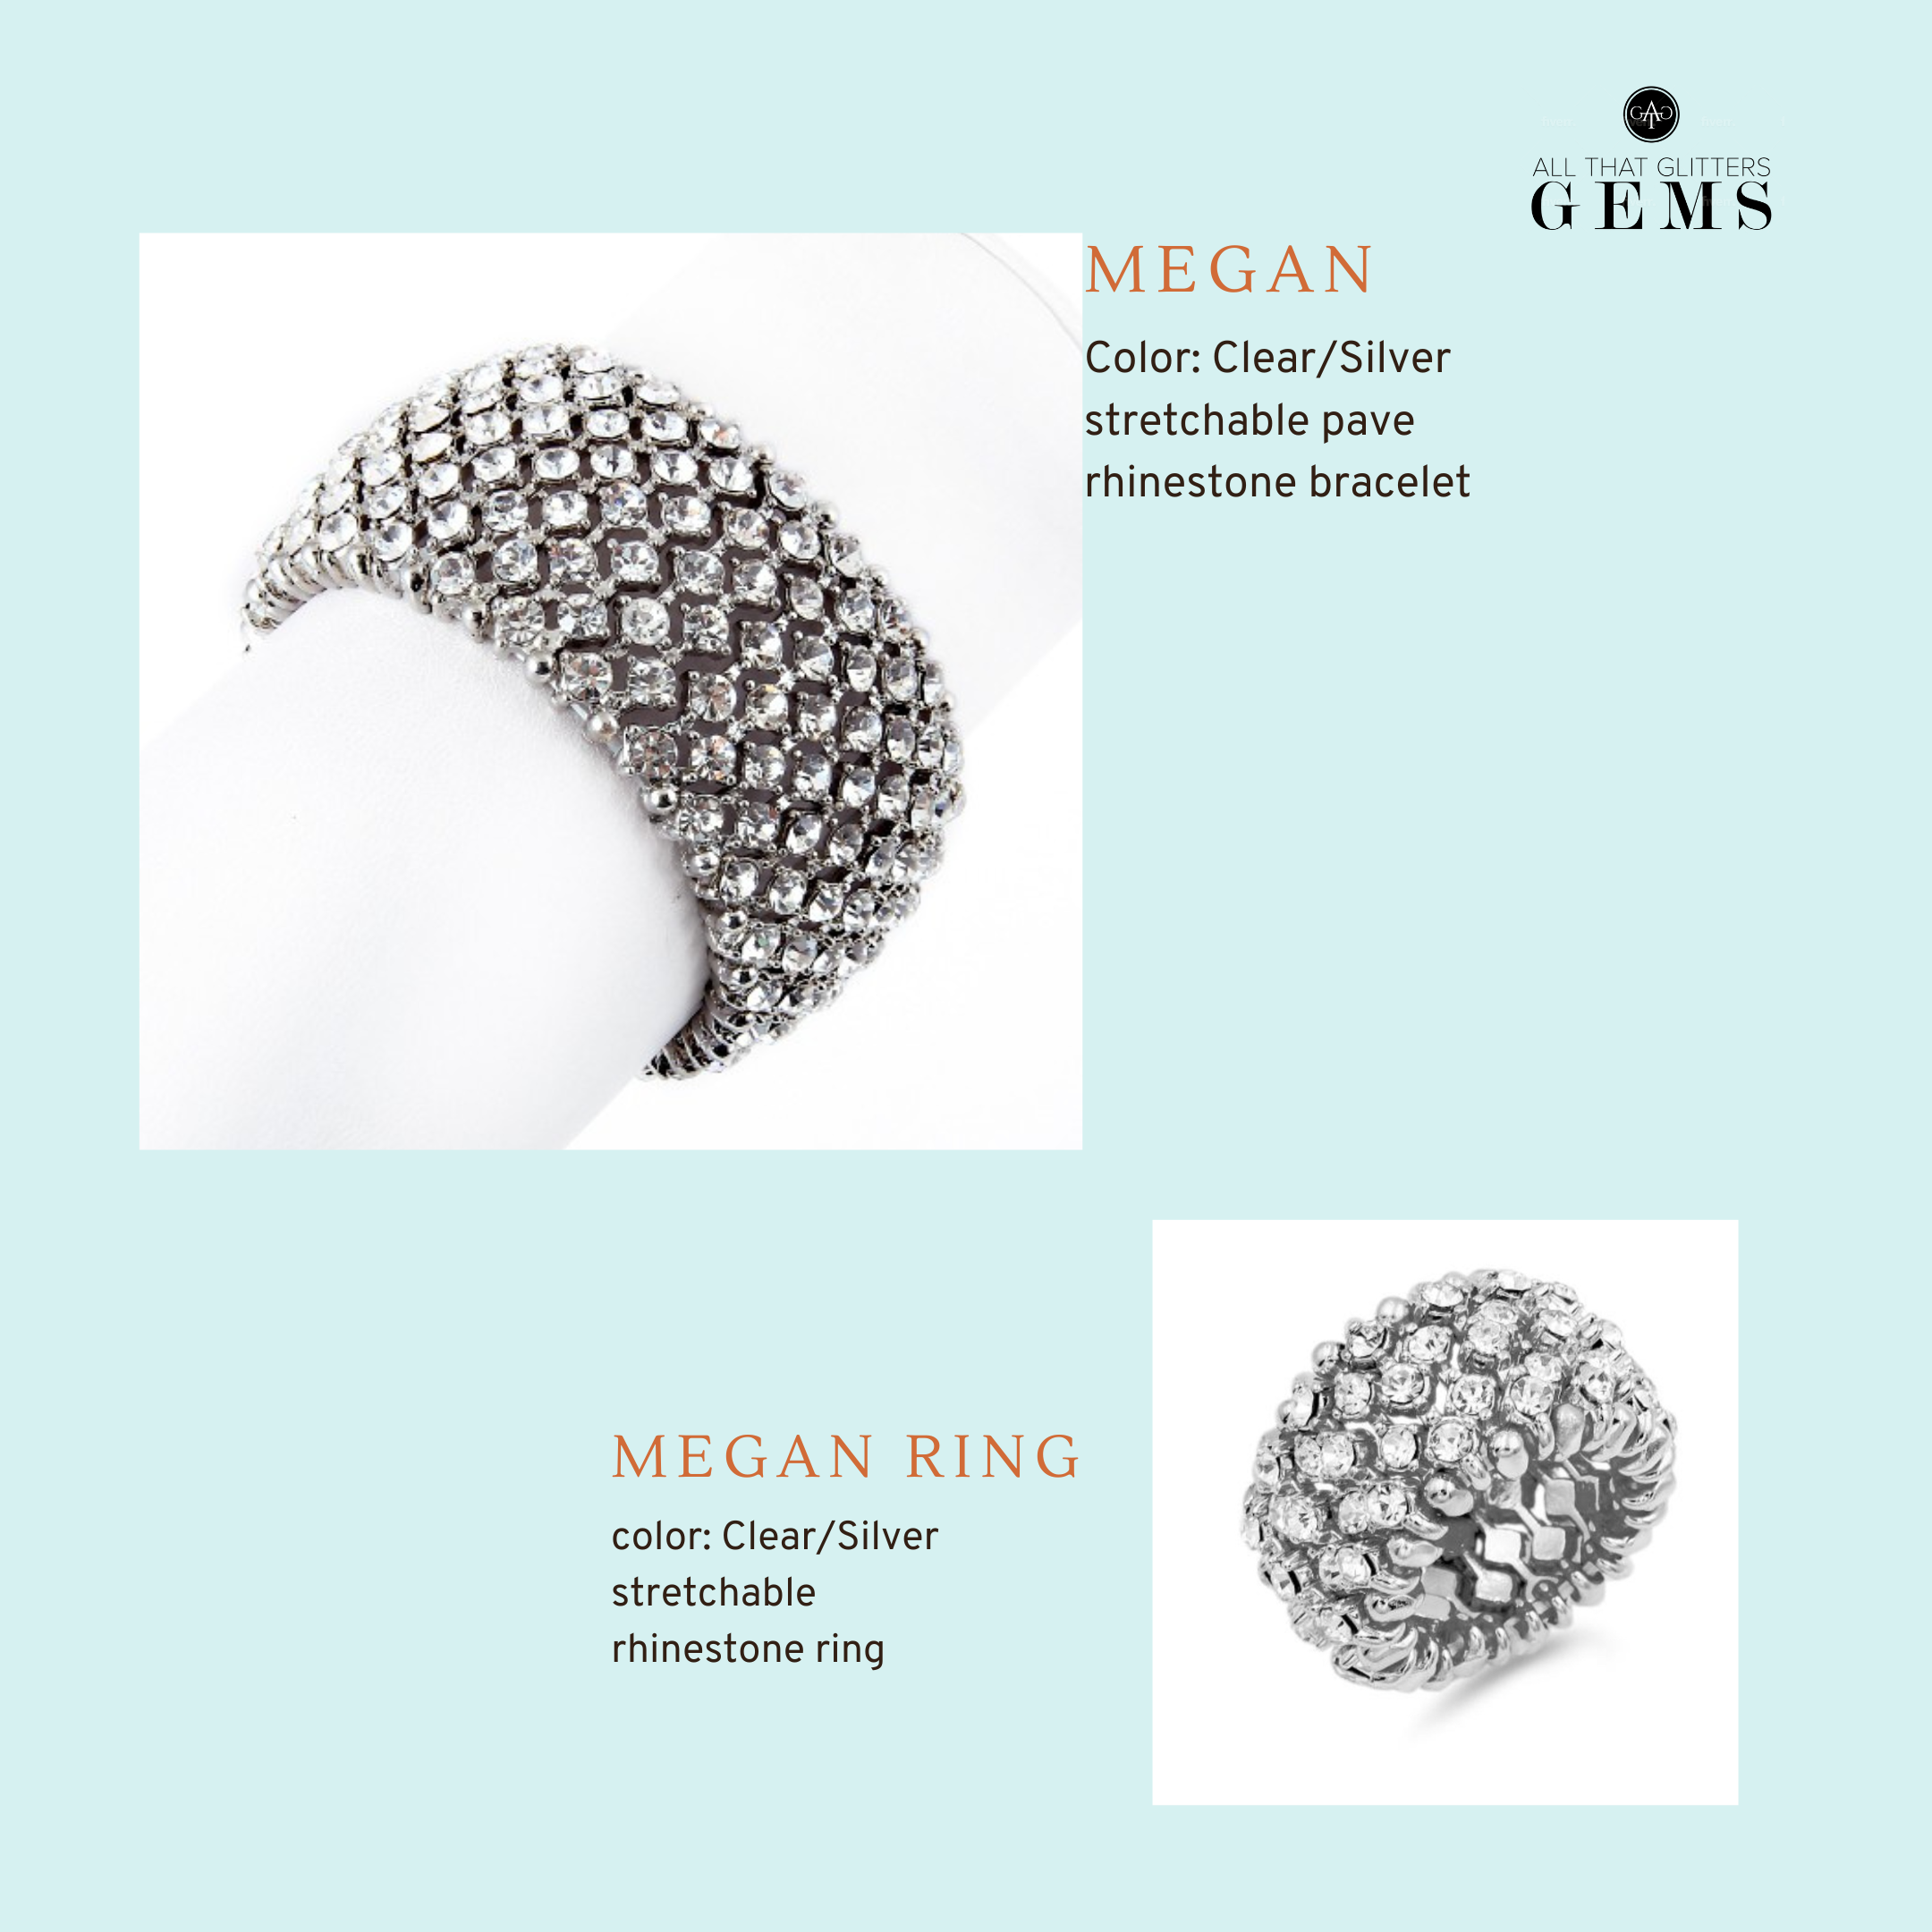 Megan - clear silver stretch pave rhinestone set